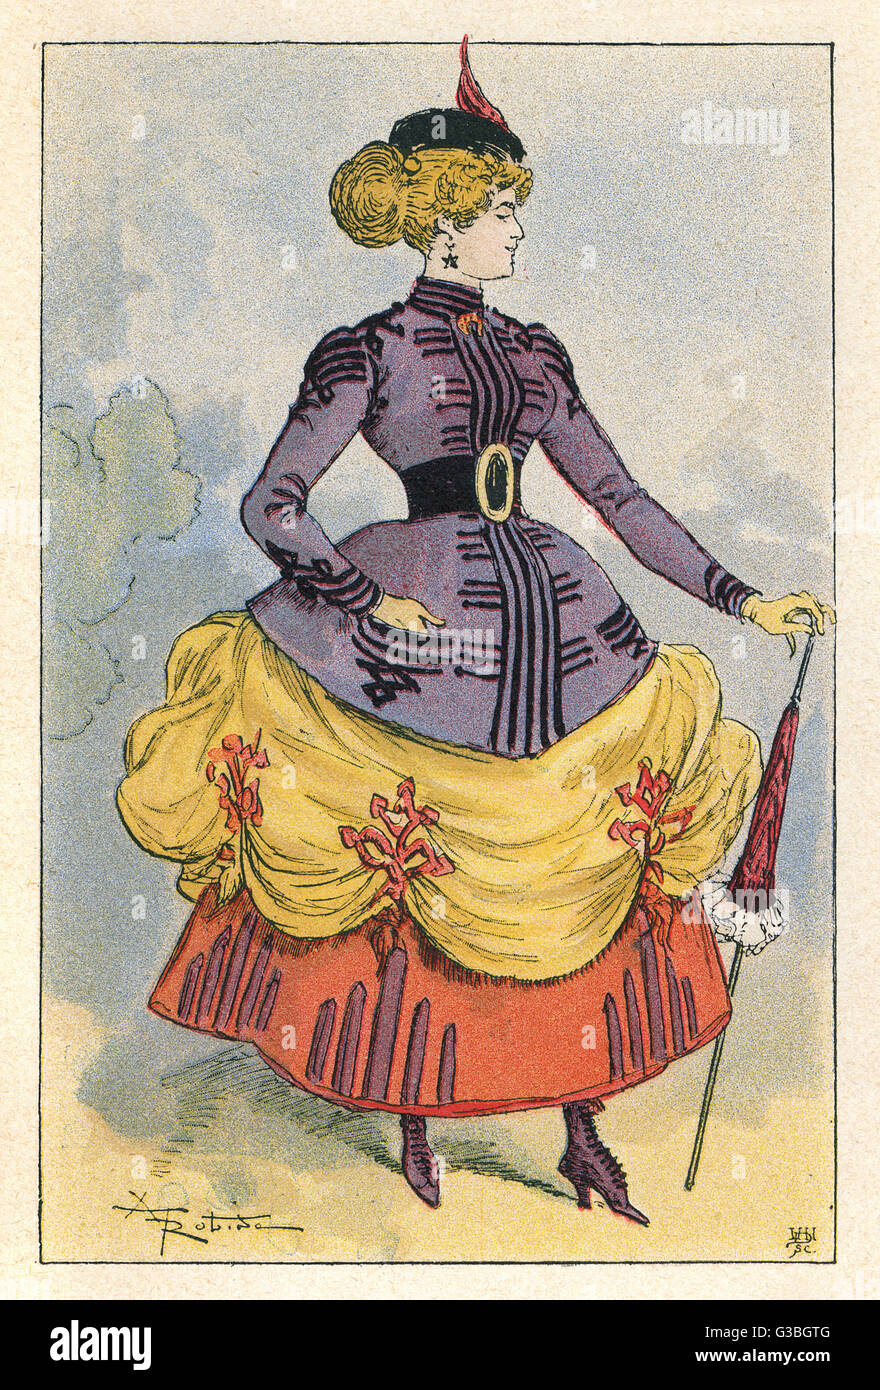 Die Vogue für kurze, hitched Up Röcke enthüllt farbenfrohe Petticoats &amp; Stiefel war ursprünglich eine englische Mode, die später von den Franzosen übernommen.     Datum: 1864 Stockfoto